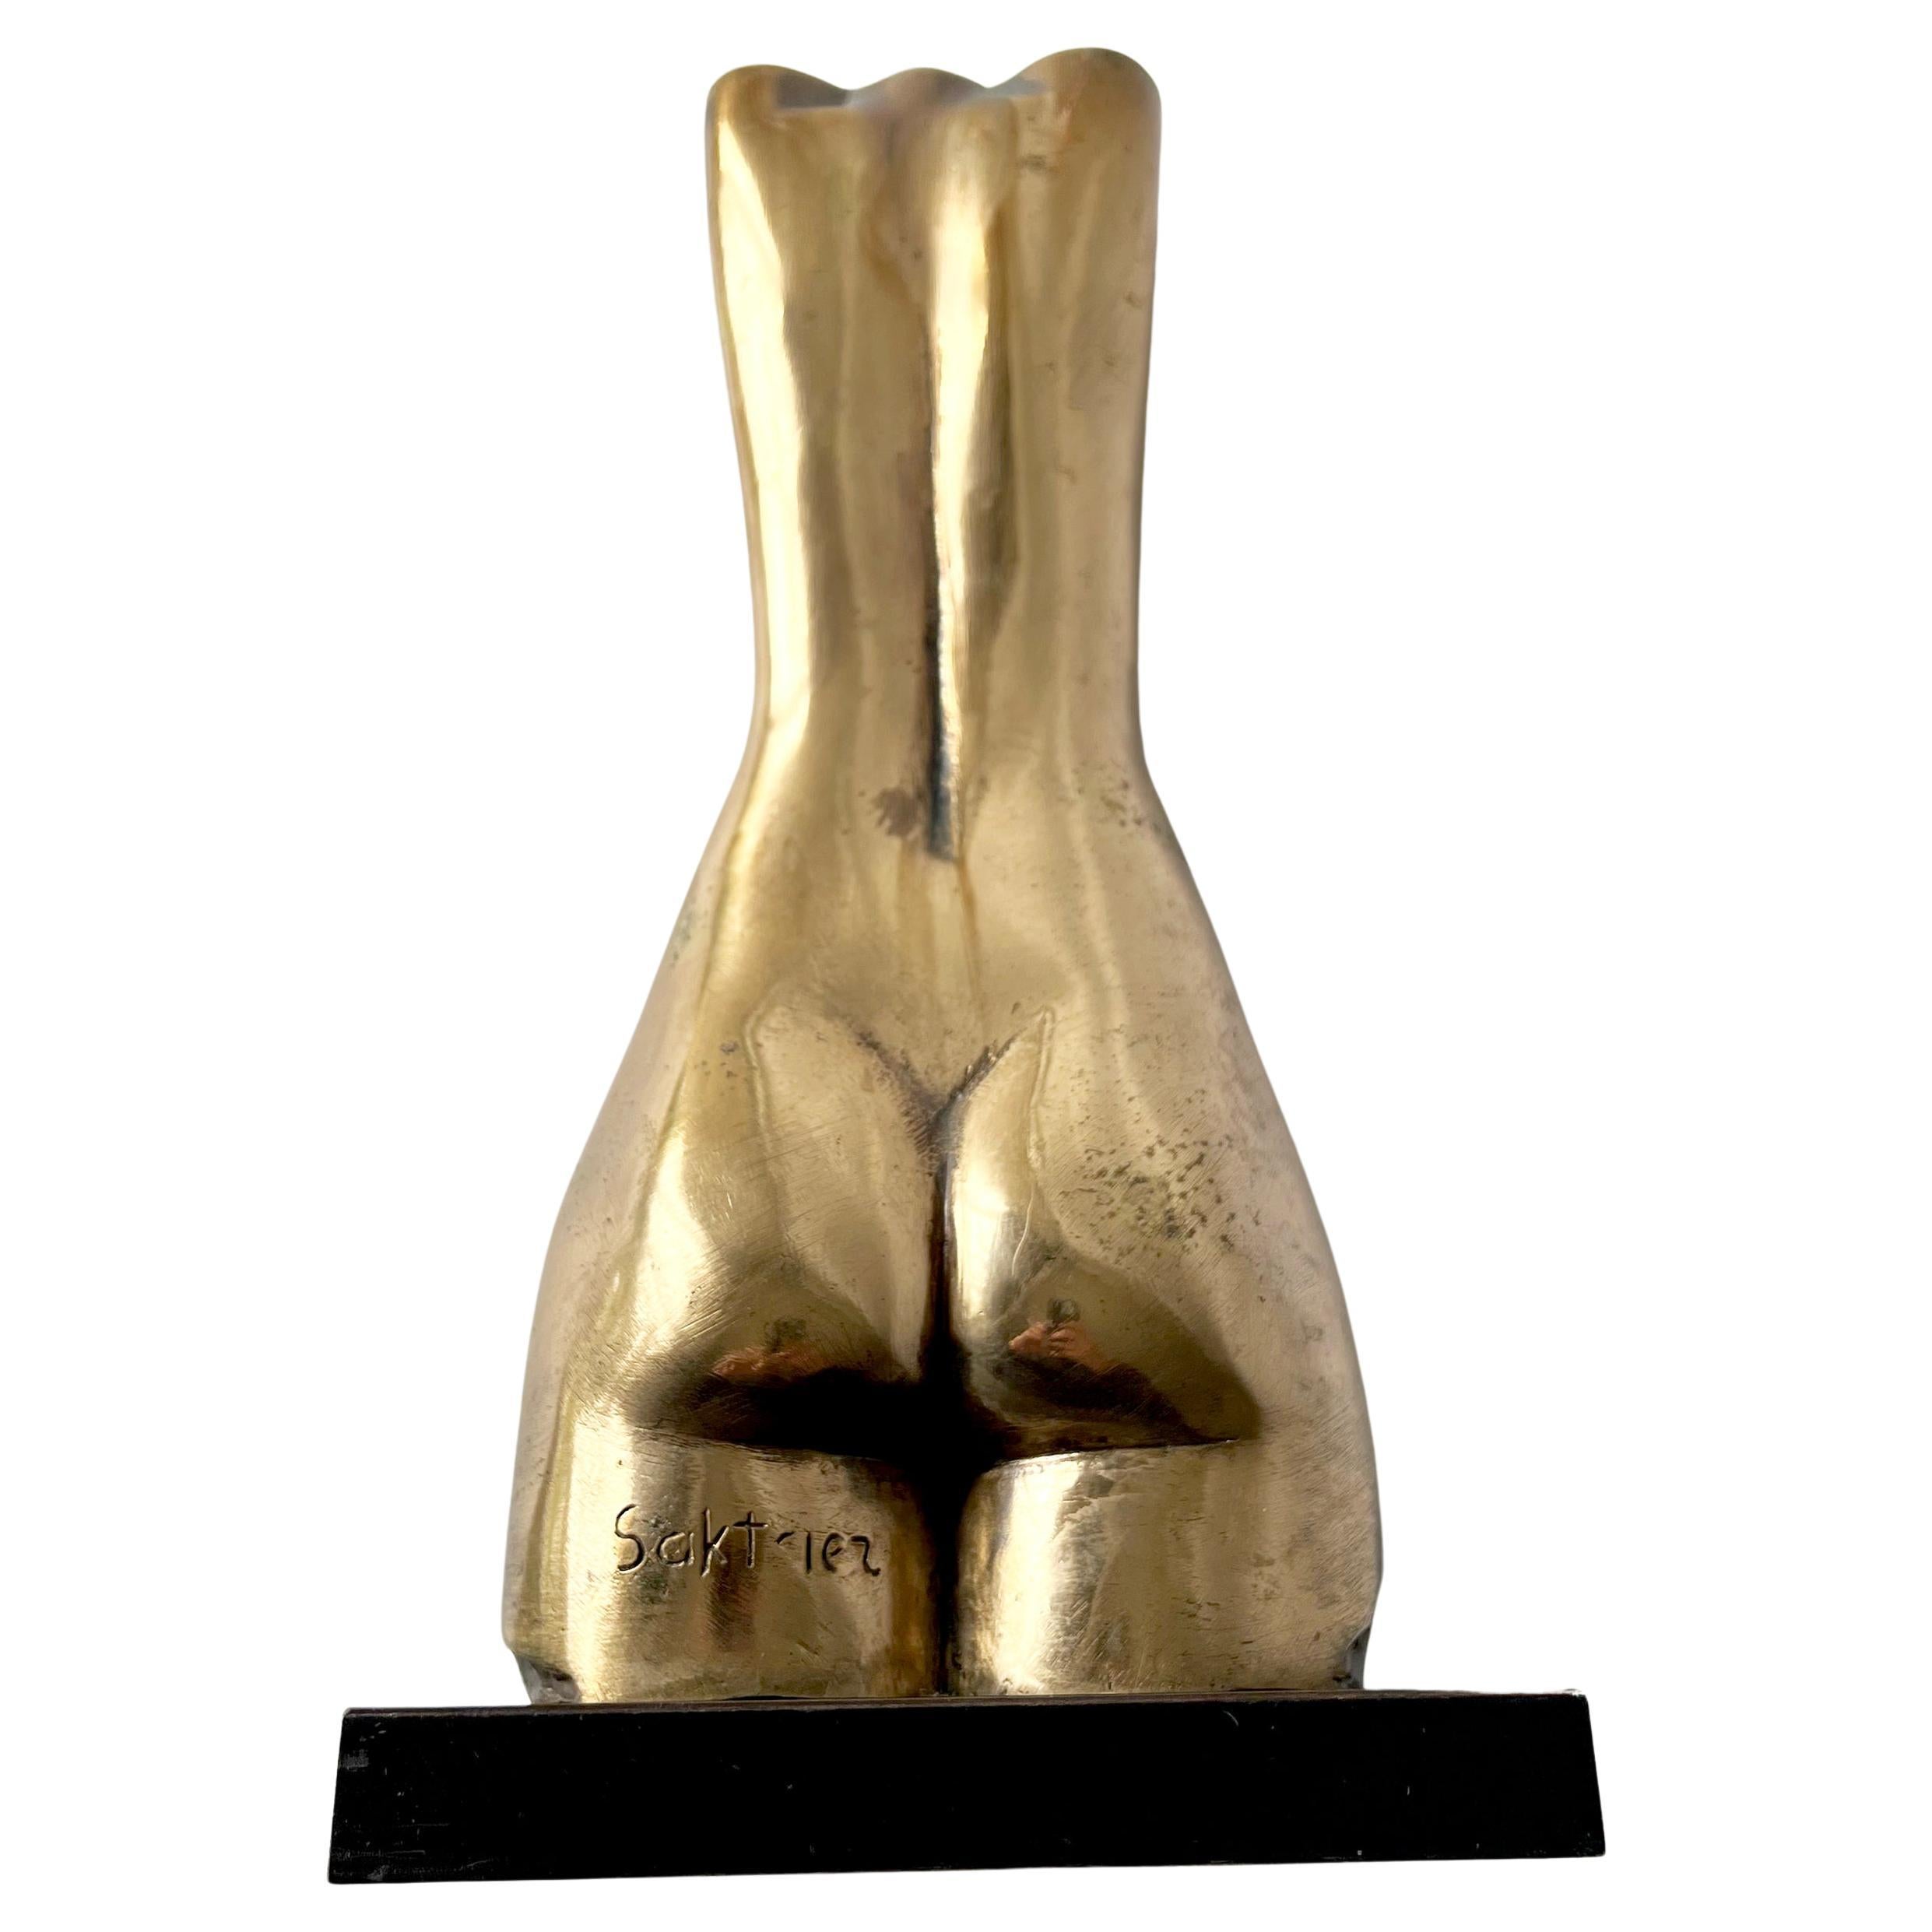 Weiblicher Bronzetorso des russischen israelischen Bildhauers Baruch Saktsier.  Die Skulptur misst 14